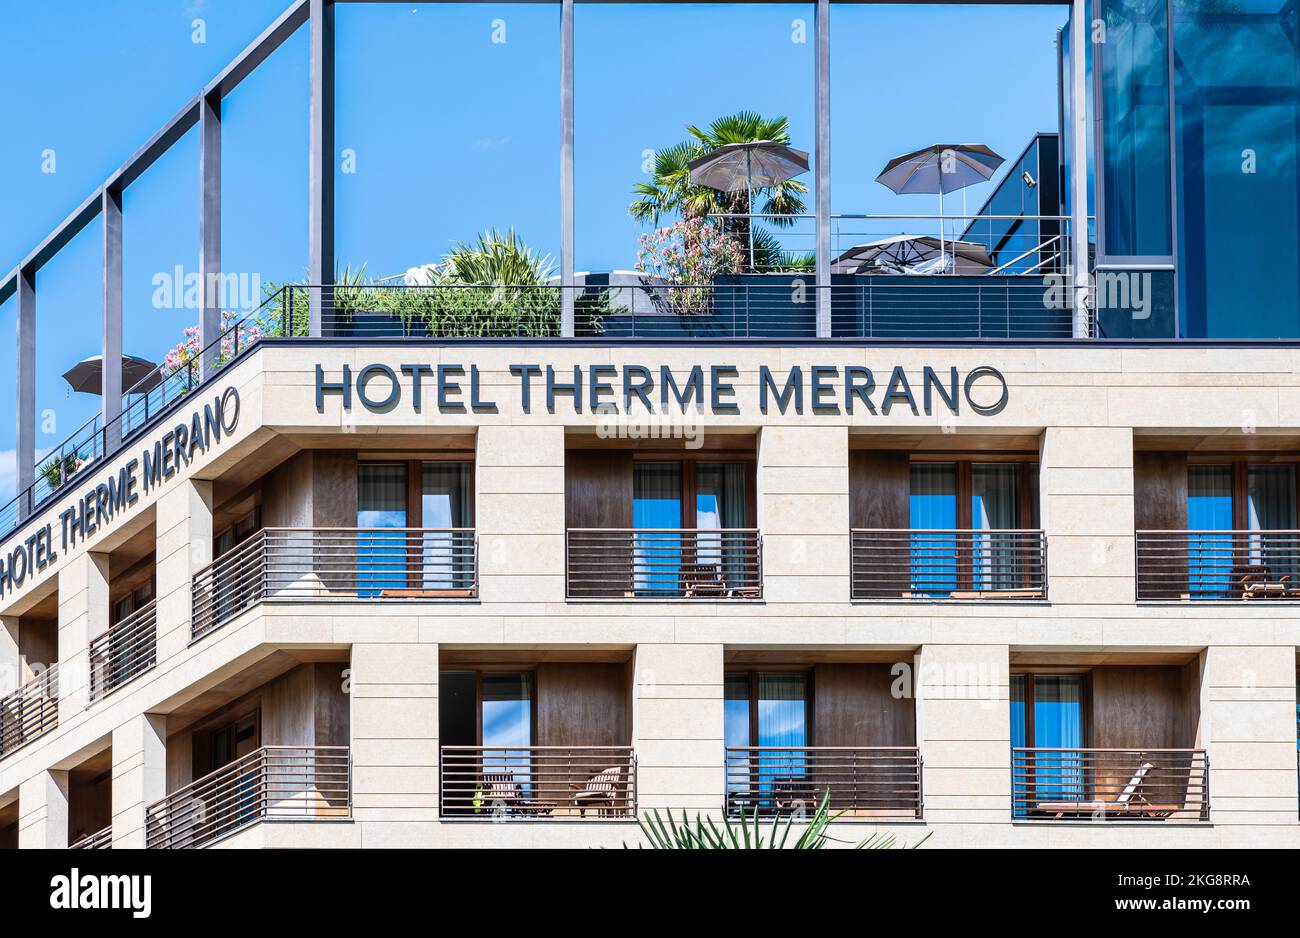 Ciudad de Merano (Meran): Fachada del Hotel Therme, Termas en Italia - Tirol del Sur - Trentino Alto Adige, norte de Italia, 25 de junio de 2022 Foto de stock